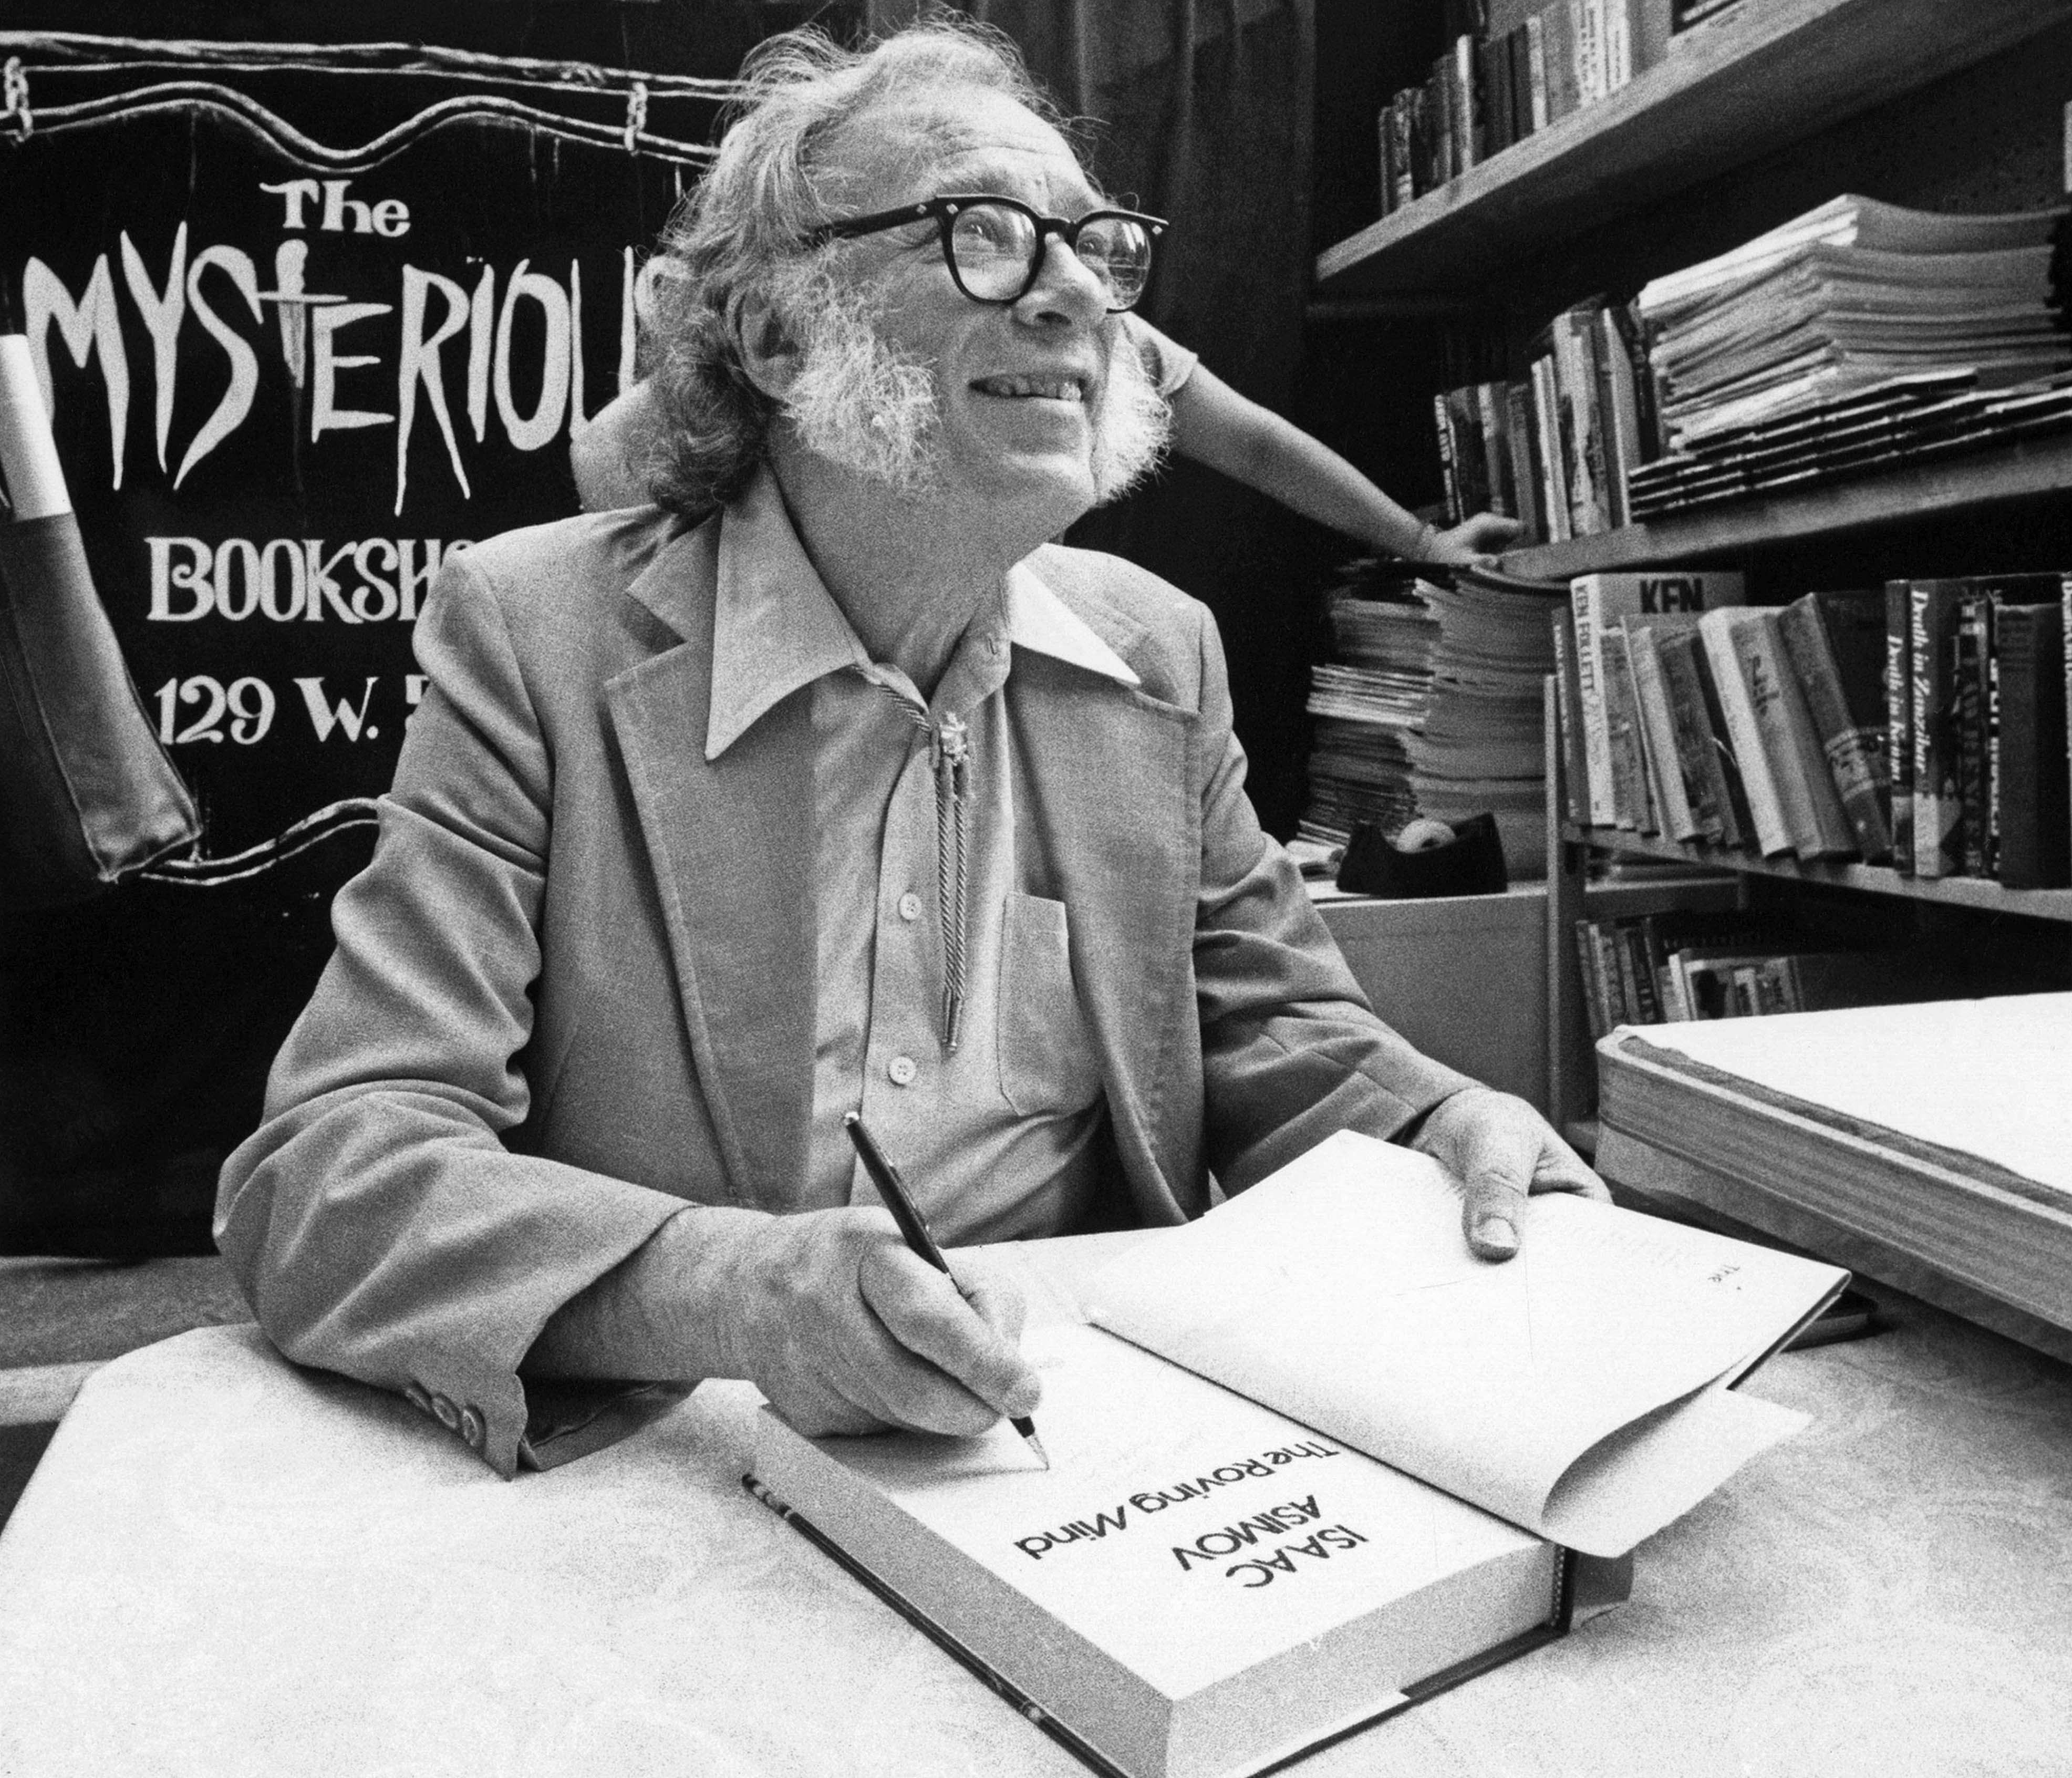 Isaac Asimov signing books.